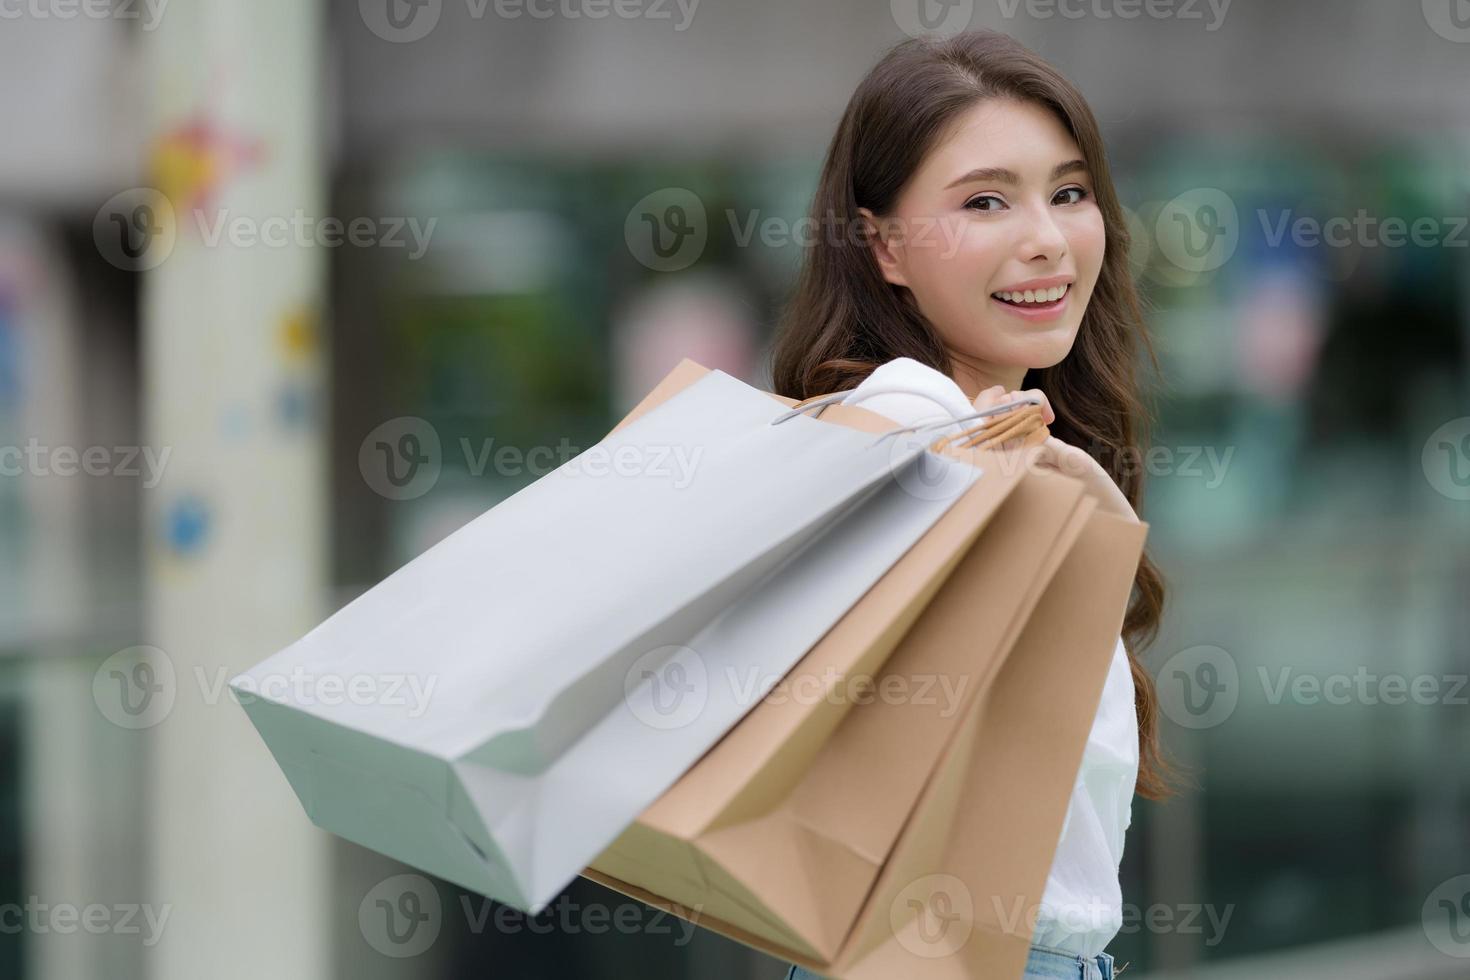 Außenporträt der glücklichen Frau, die Einkaufstaschen und lächelndes Gesicht hält foto